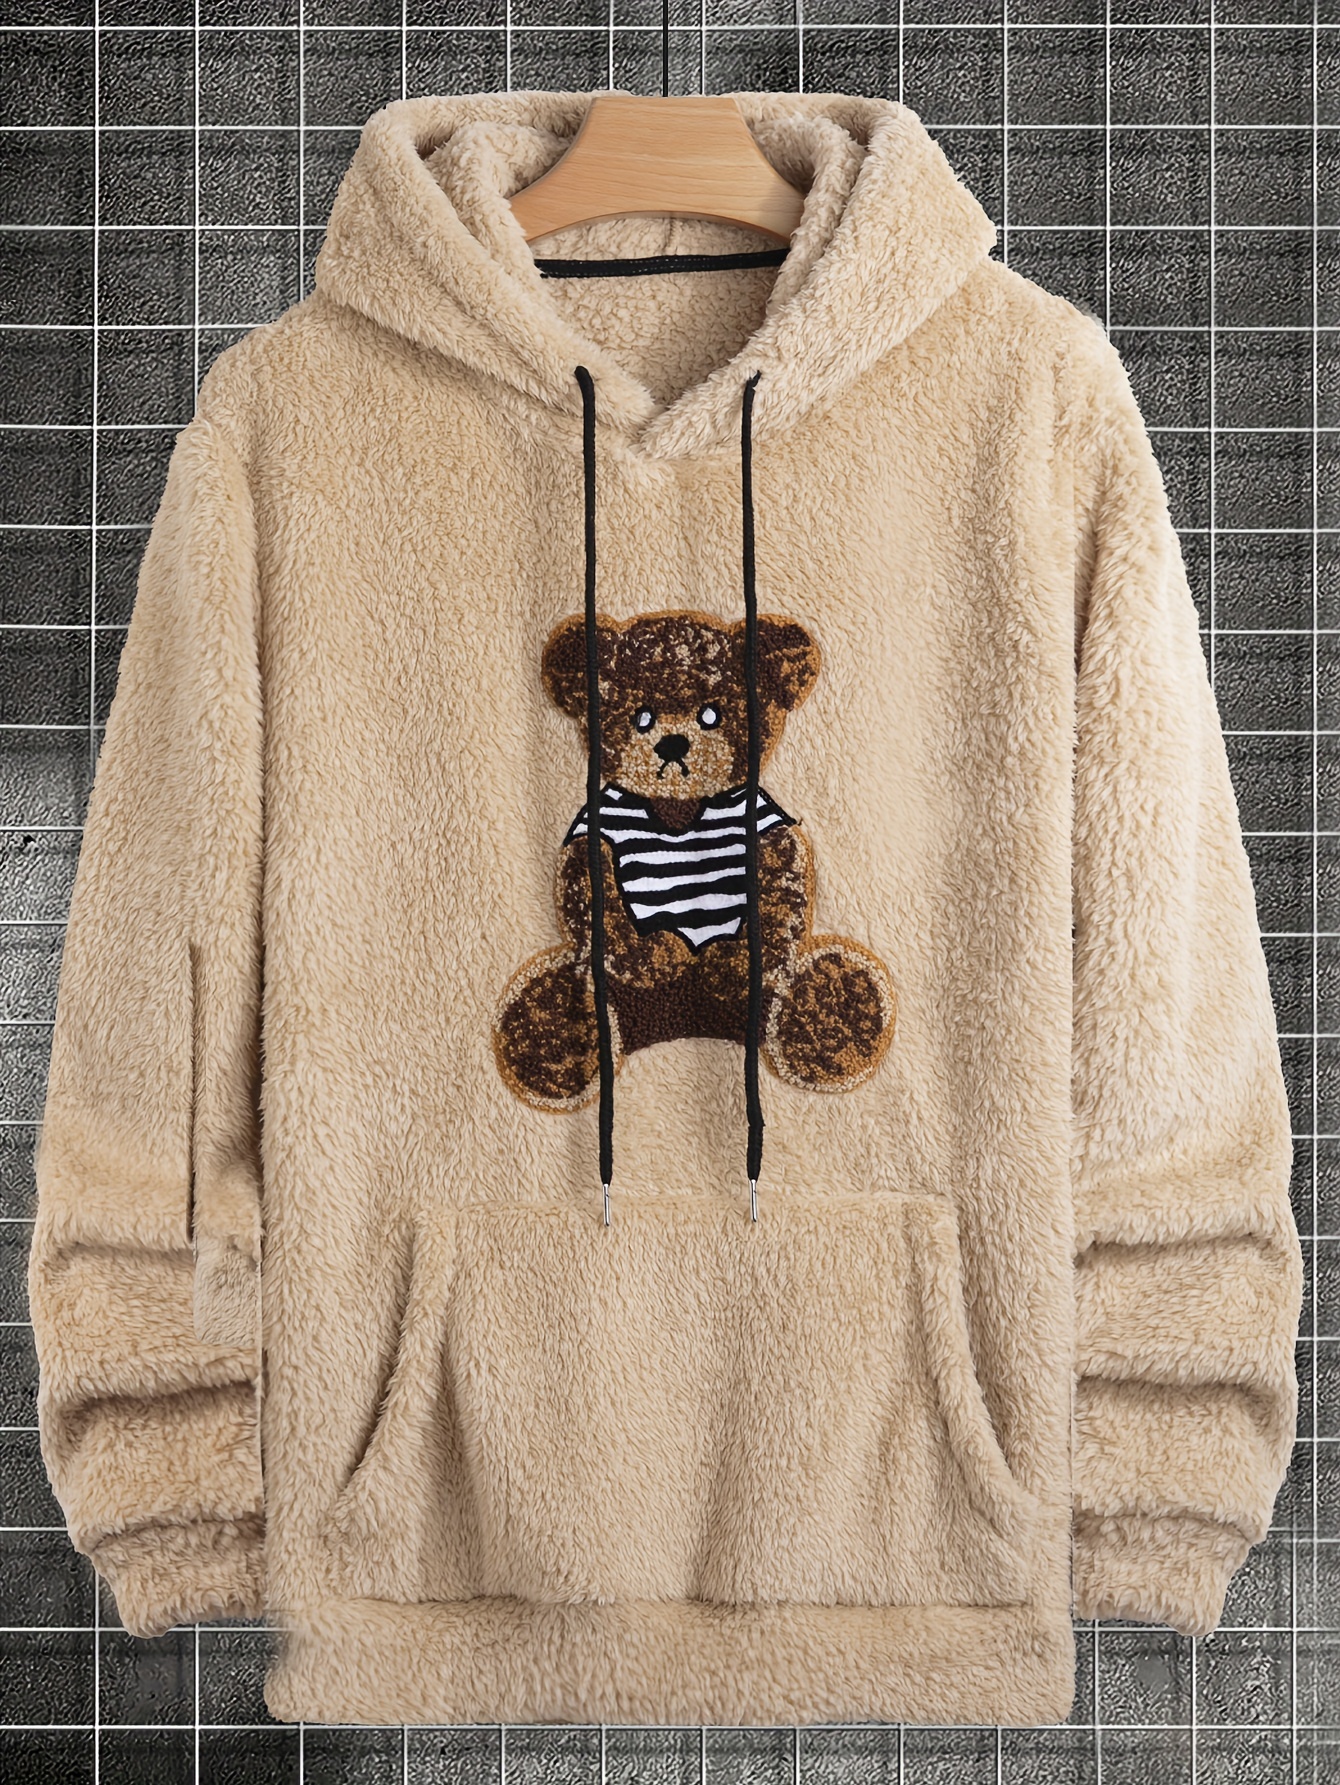 ZAFUL Hooded Hoodies for Men Fluffy Teddy Bear Pattern Sweatshirts